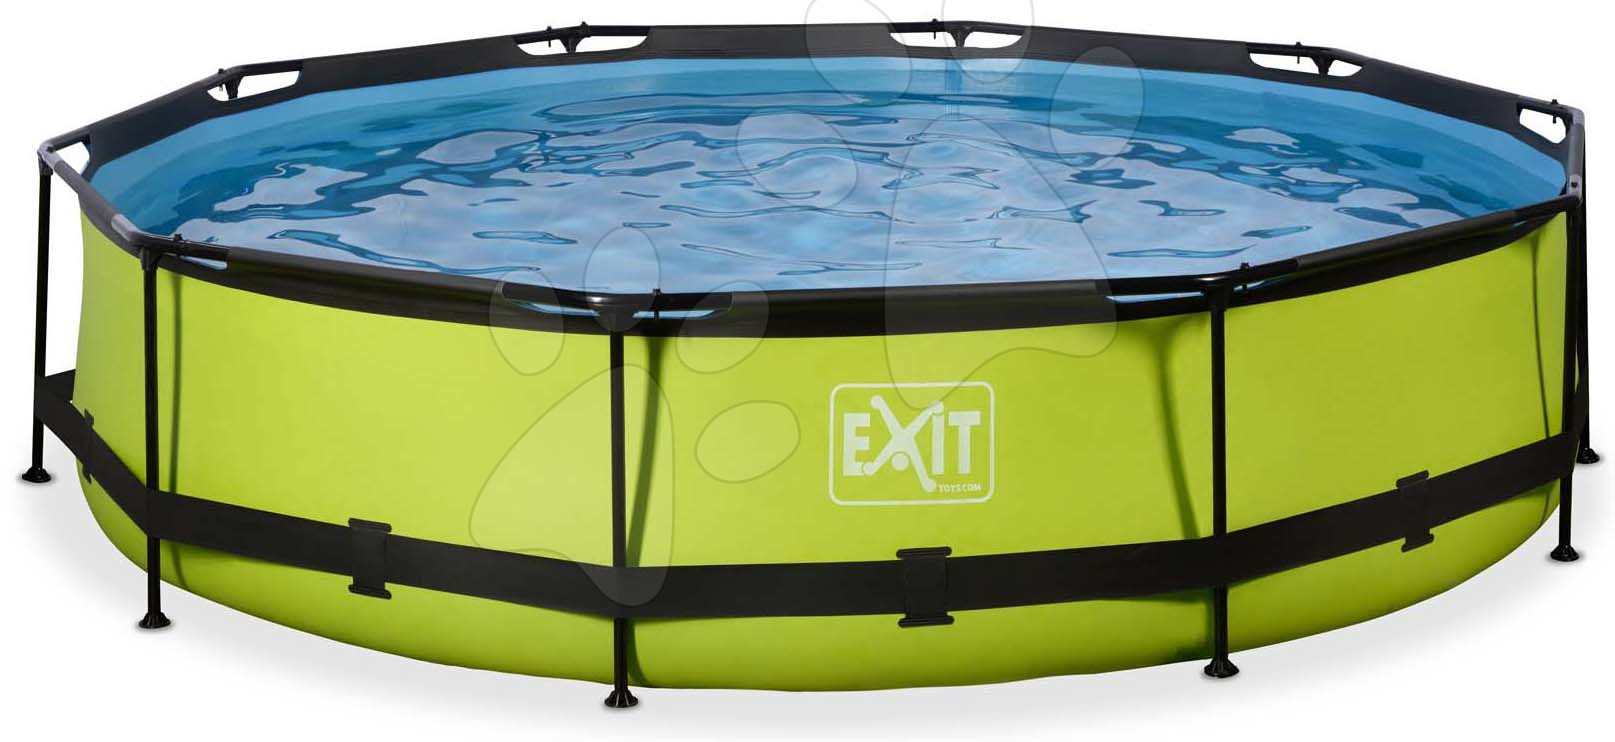 Medence szűrős szivattyúval Lime pool Exit Toys kerek acél medencekeret 360*76 cm zöld 6 évtől